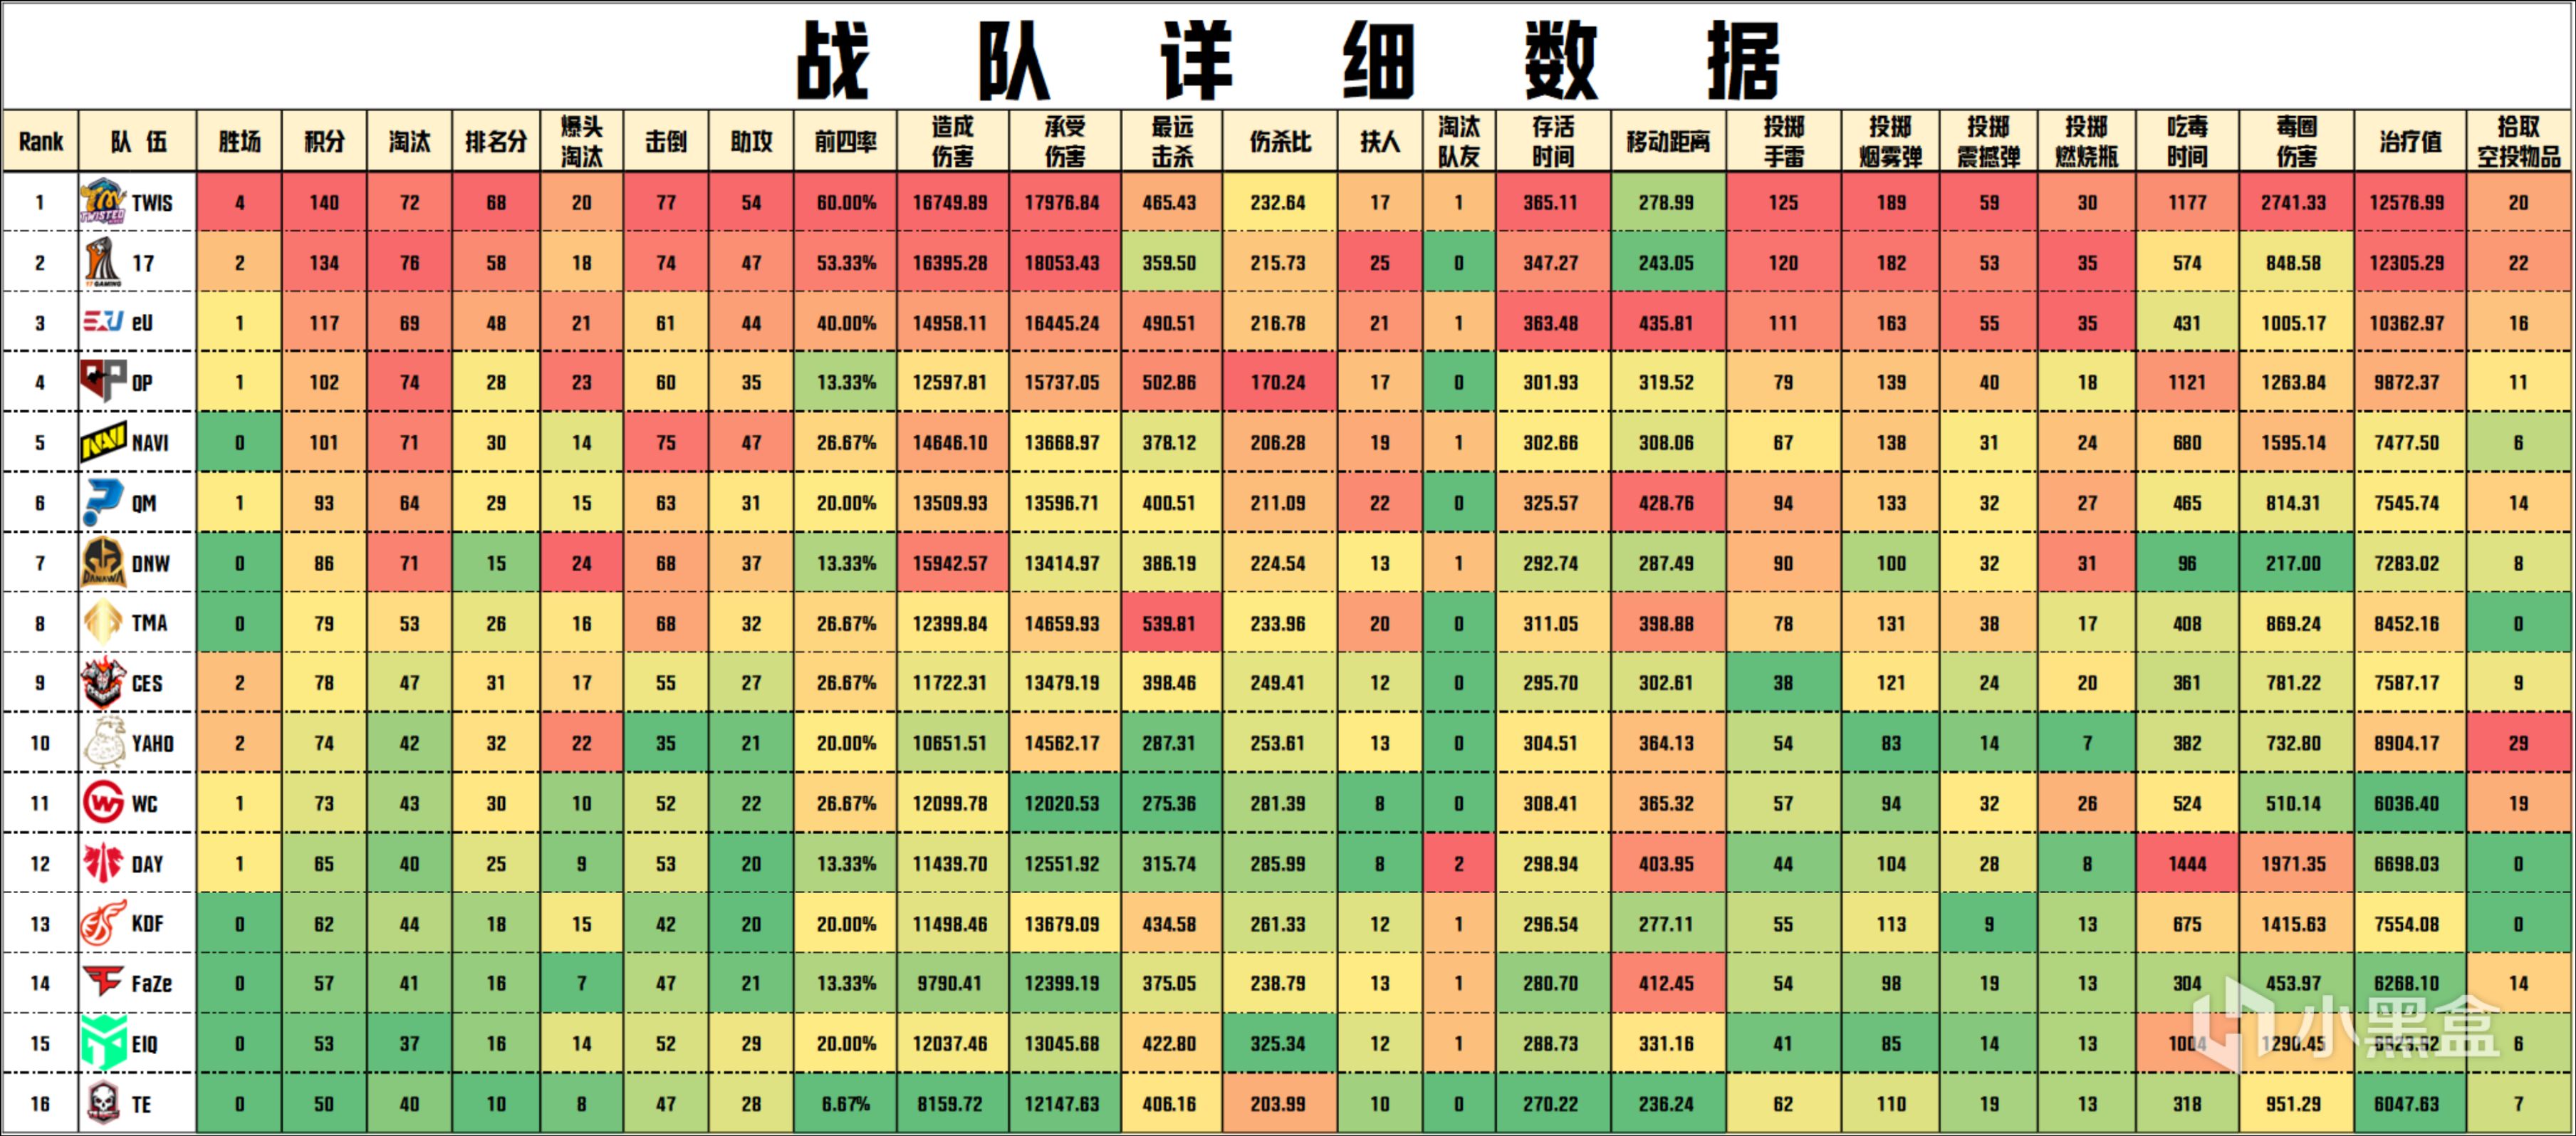 【数据流】PGC决赛D3/4,TWIS 140分来到榜首,DNW_seoul战神31淘汰-第3张